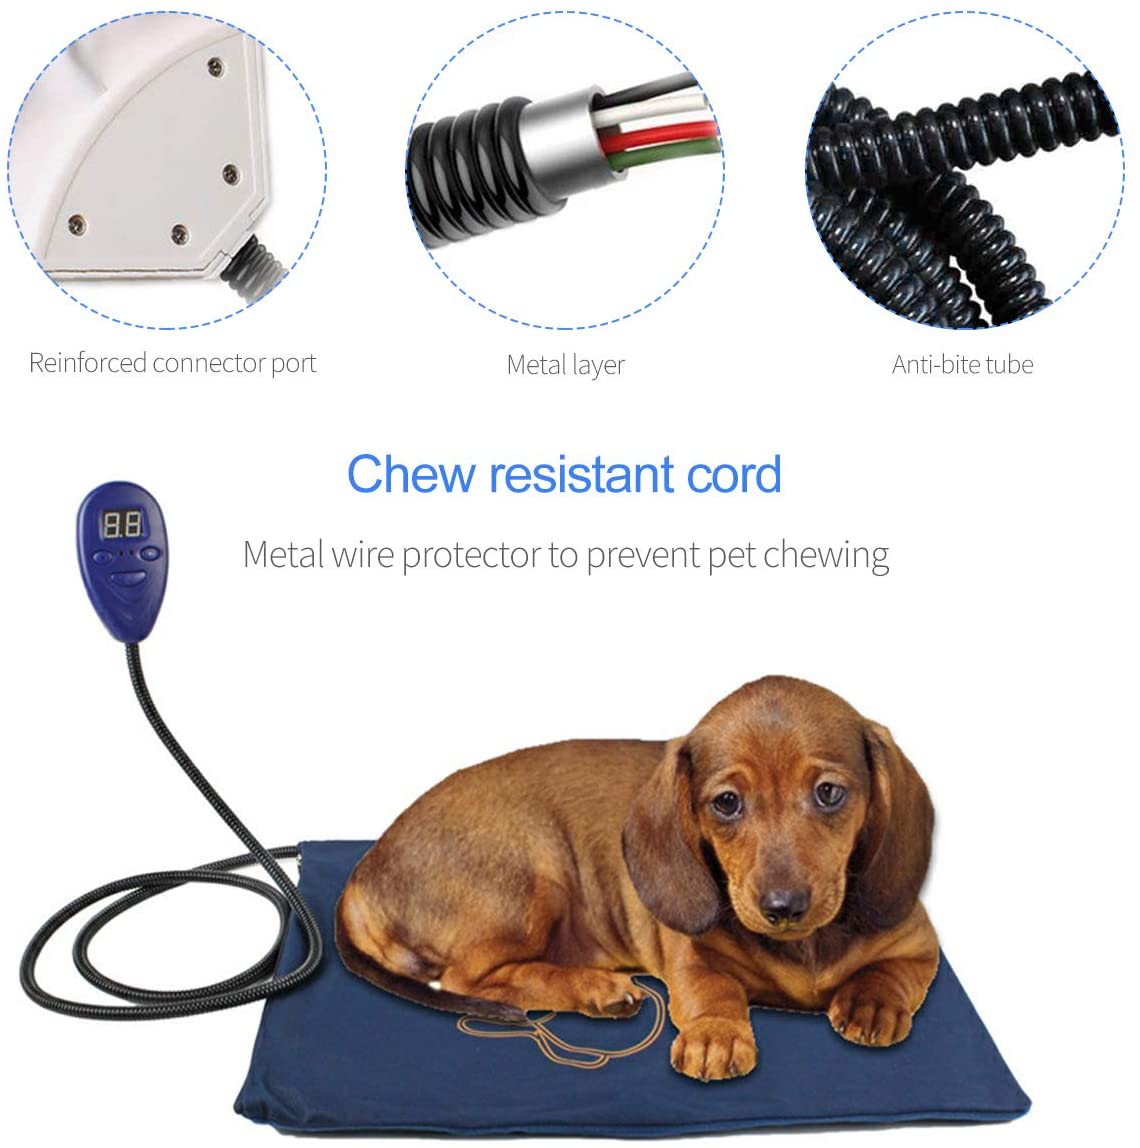  PETCUTE Manta Eléctrica para Mascotas Cojín de Calefacción para Perros Almohadilla Cama de Perro Alfombra electrica para Gatos Perros 